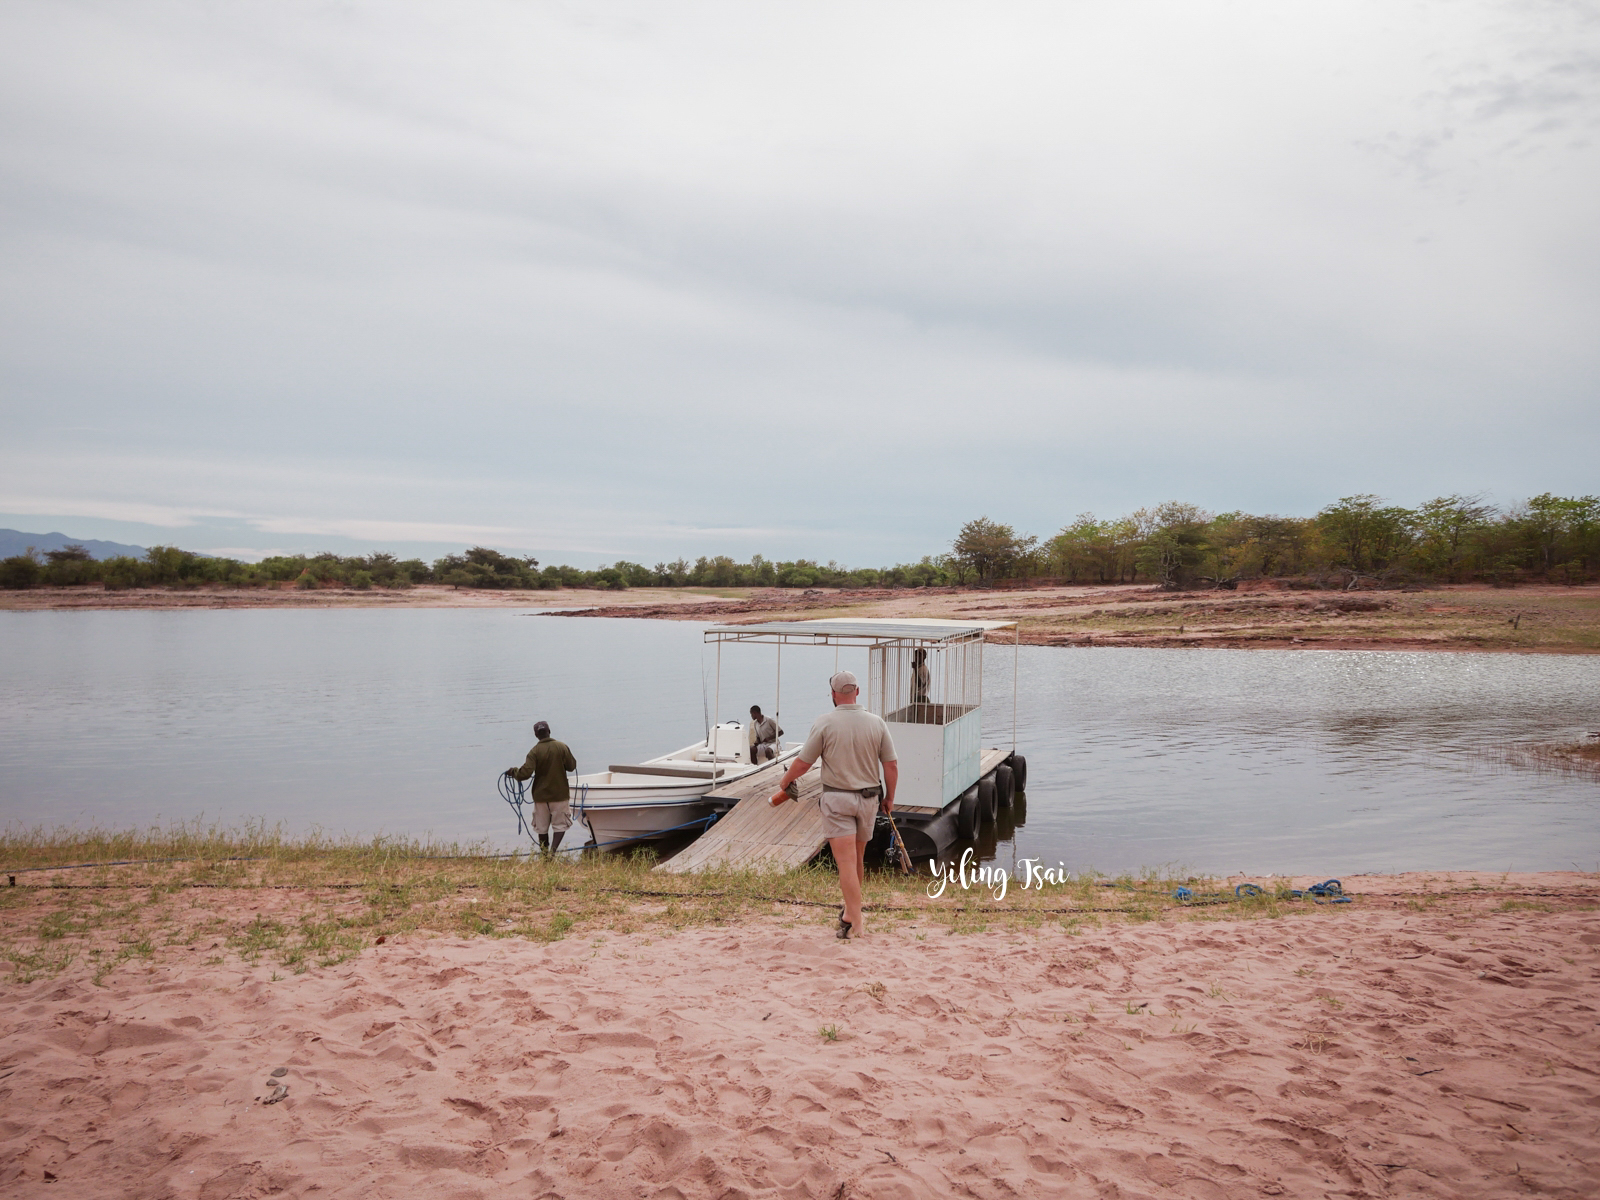 辛巴威景點 馬圖薩多納國家公園 卡里巴水庫 非洲獵遊、河谷健行、釣魚體驗